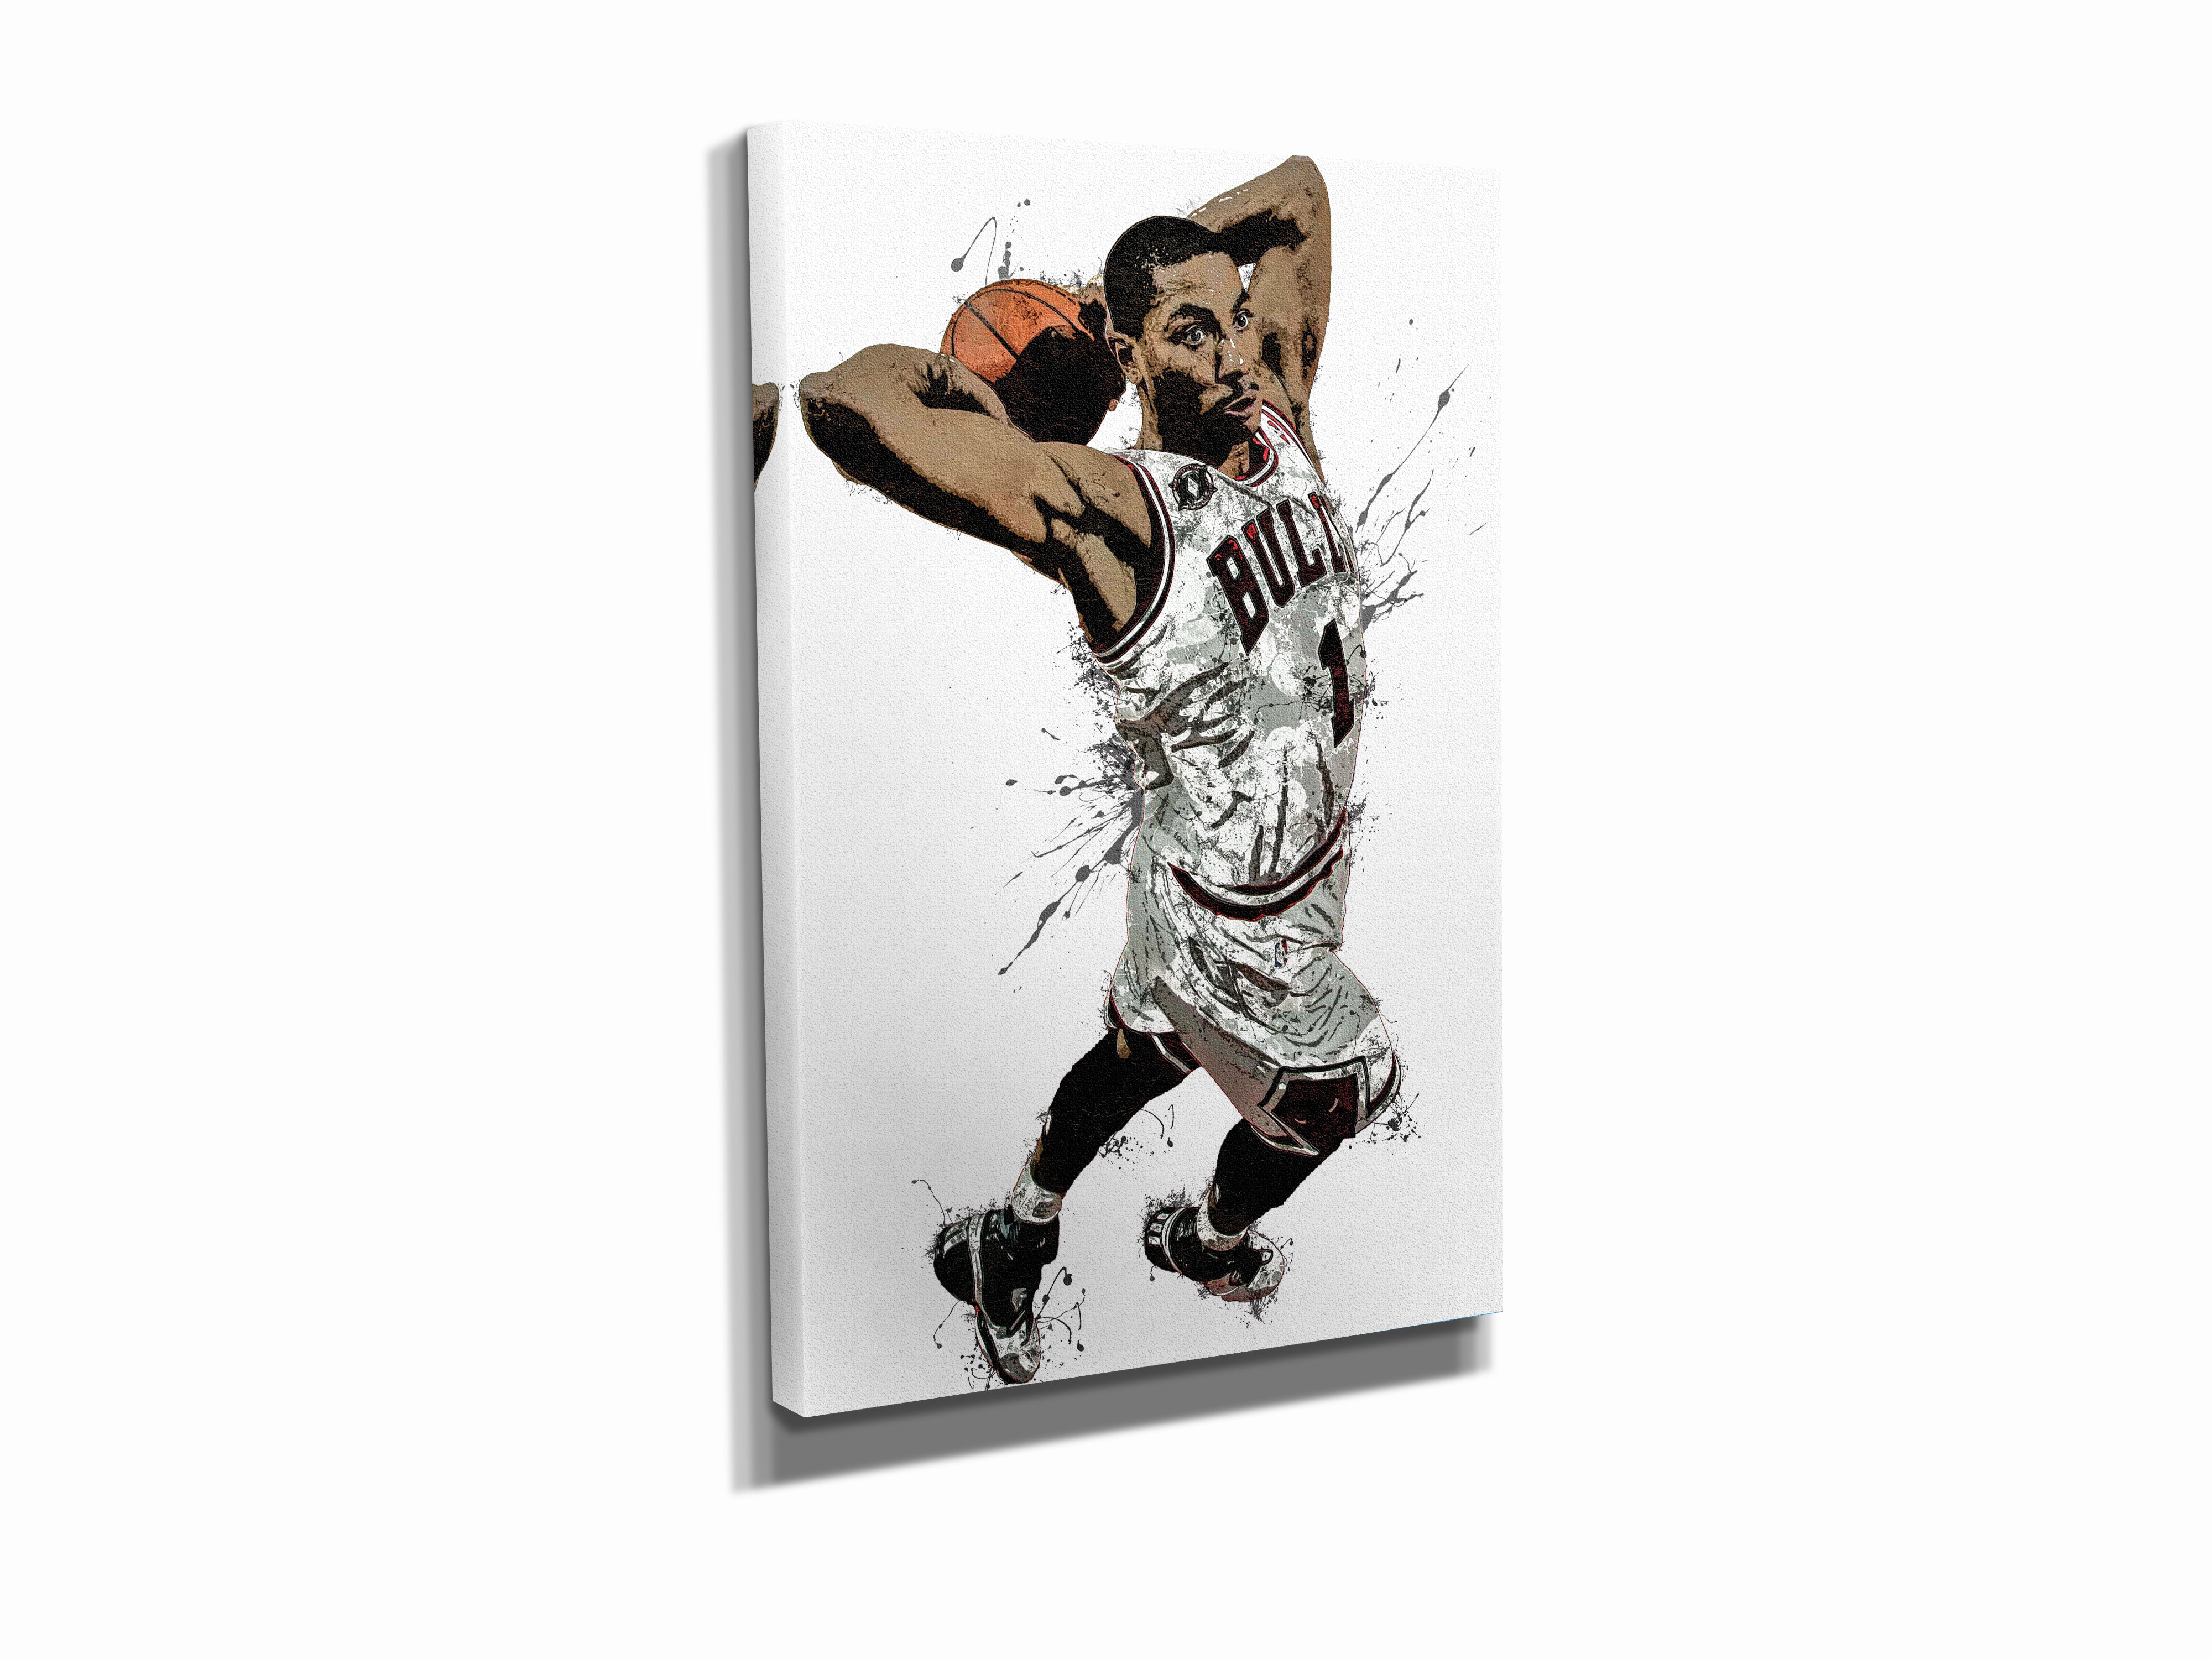 Derrick Rose Poster Man Cave Art Basketball Player Art 